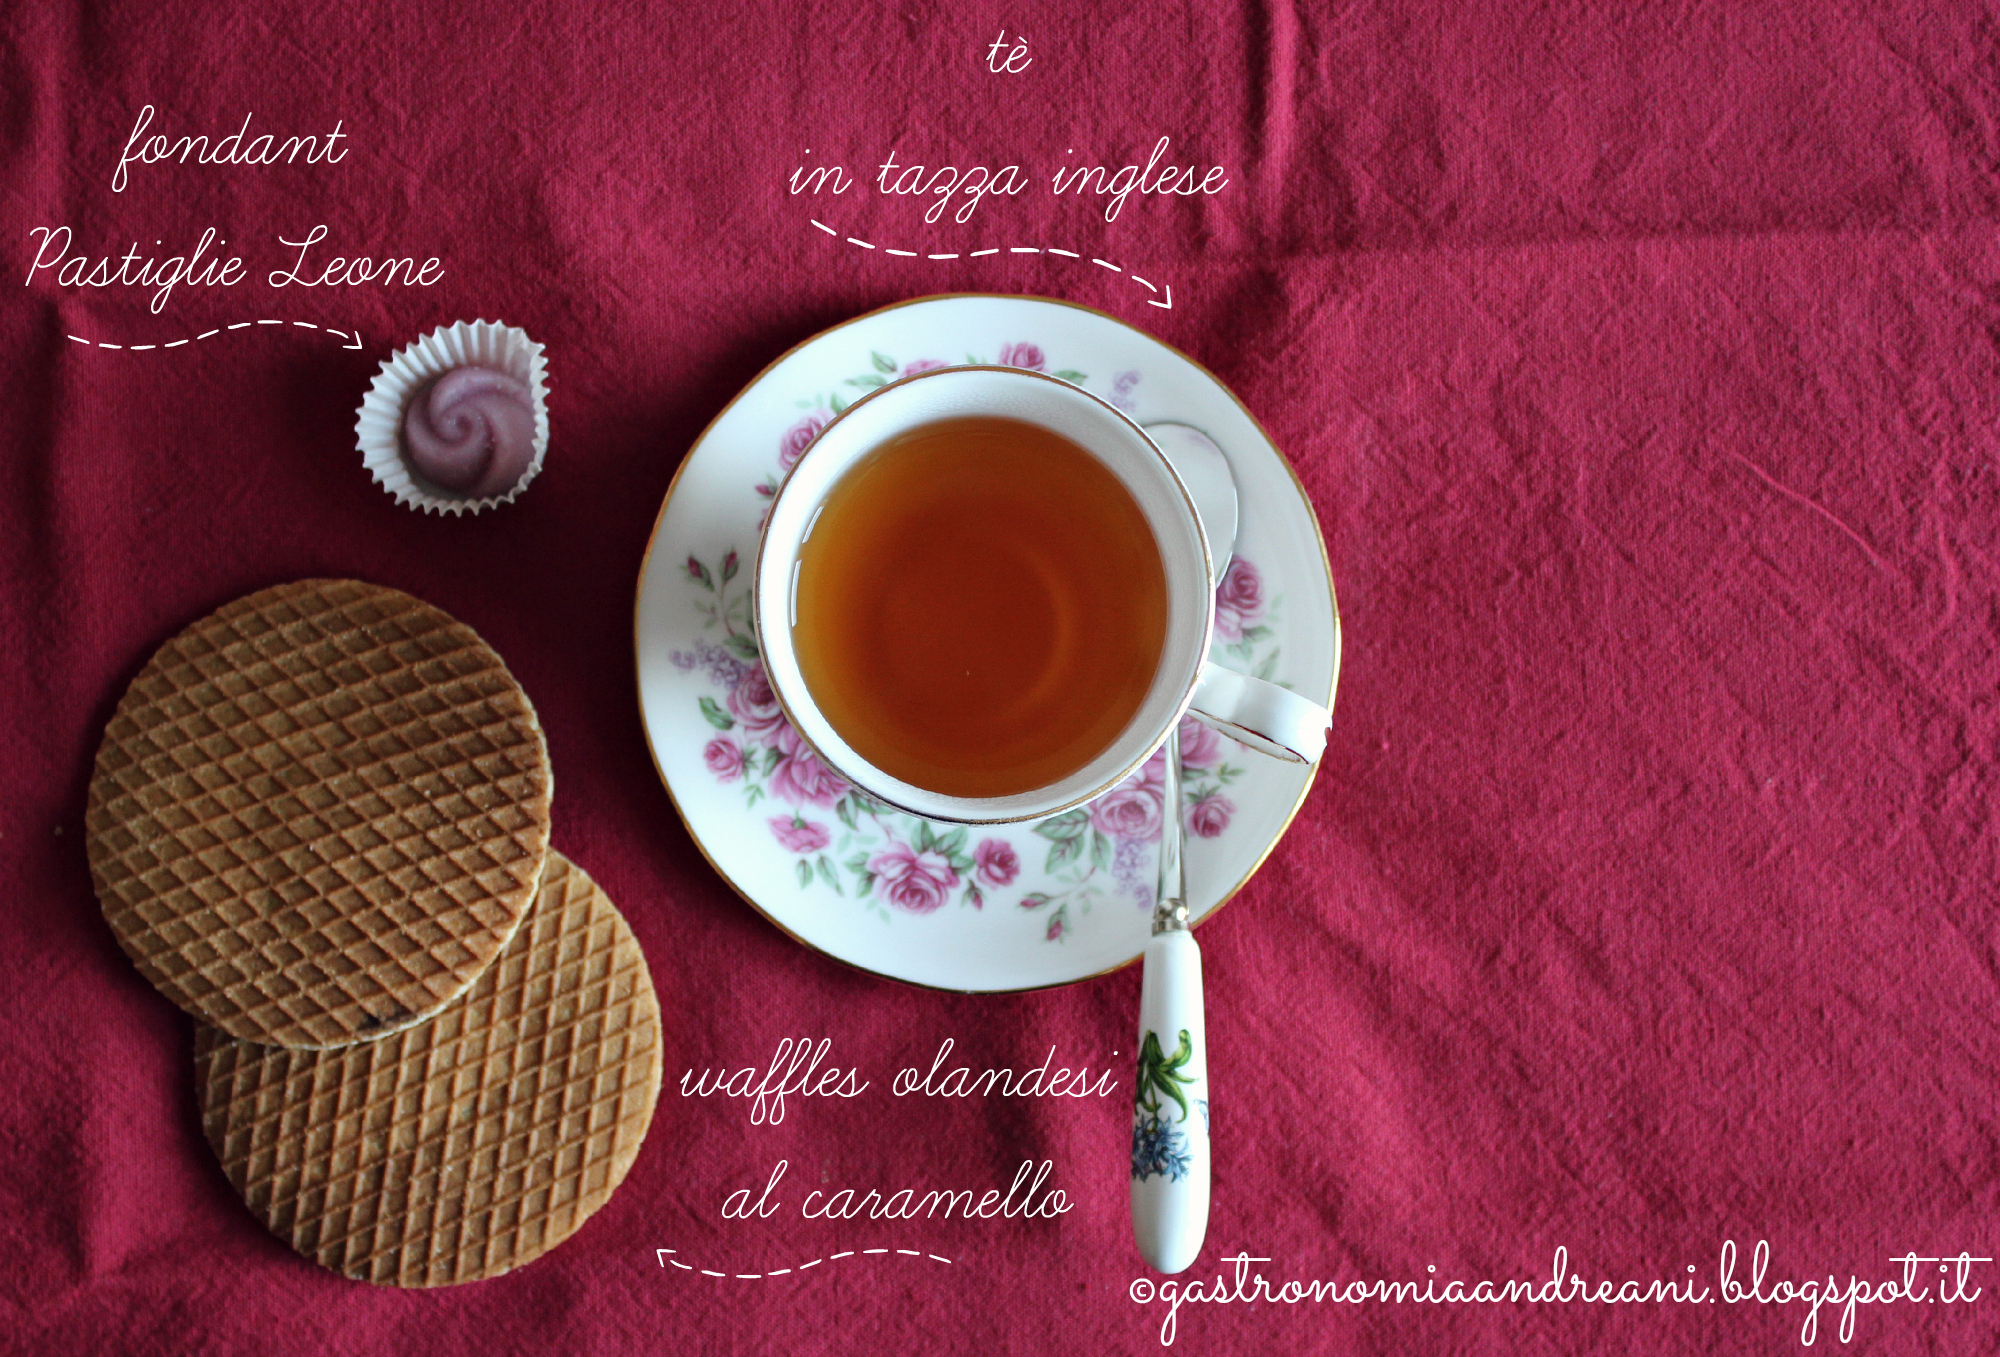 #ptitzelda2014day9 - waffles olandesi al caramello, fondant Pastiglie Leone, tè in tazza inglese